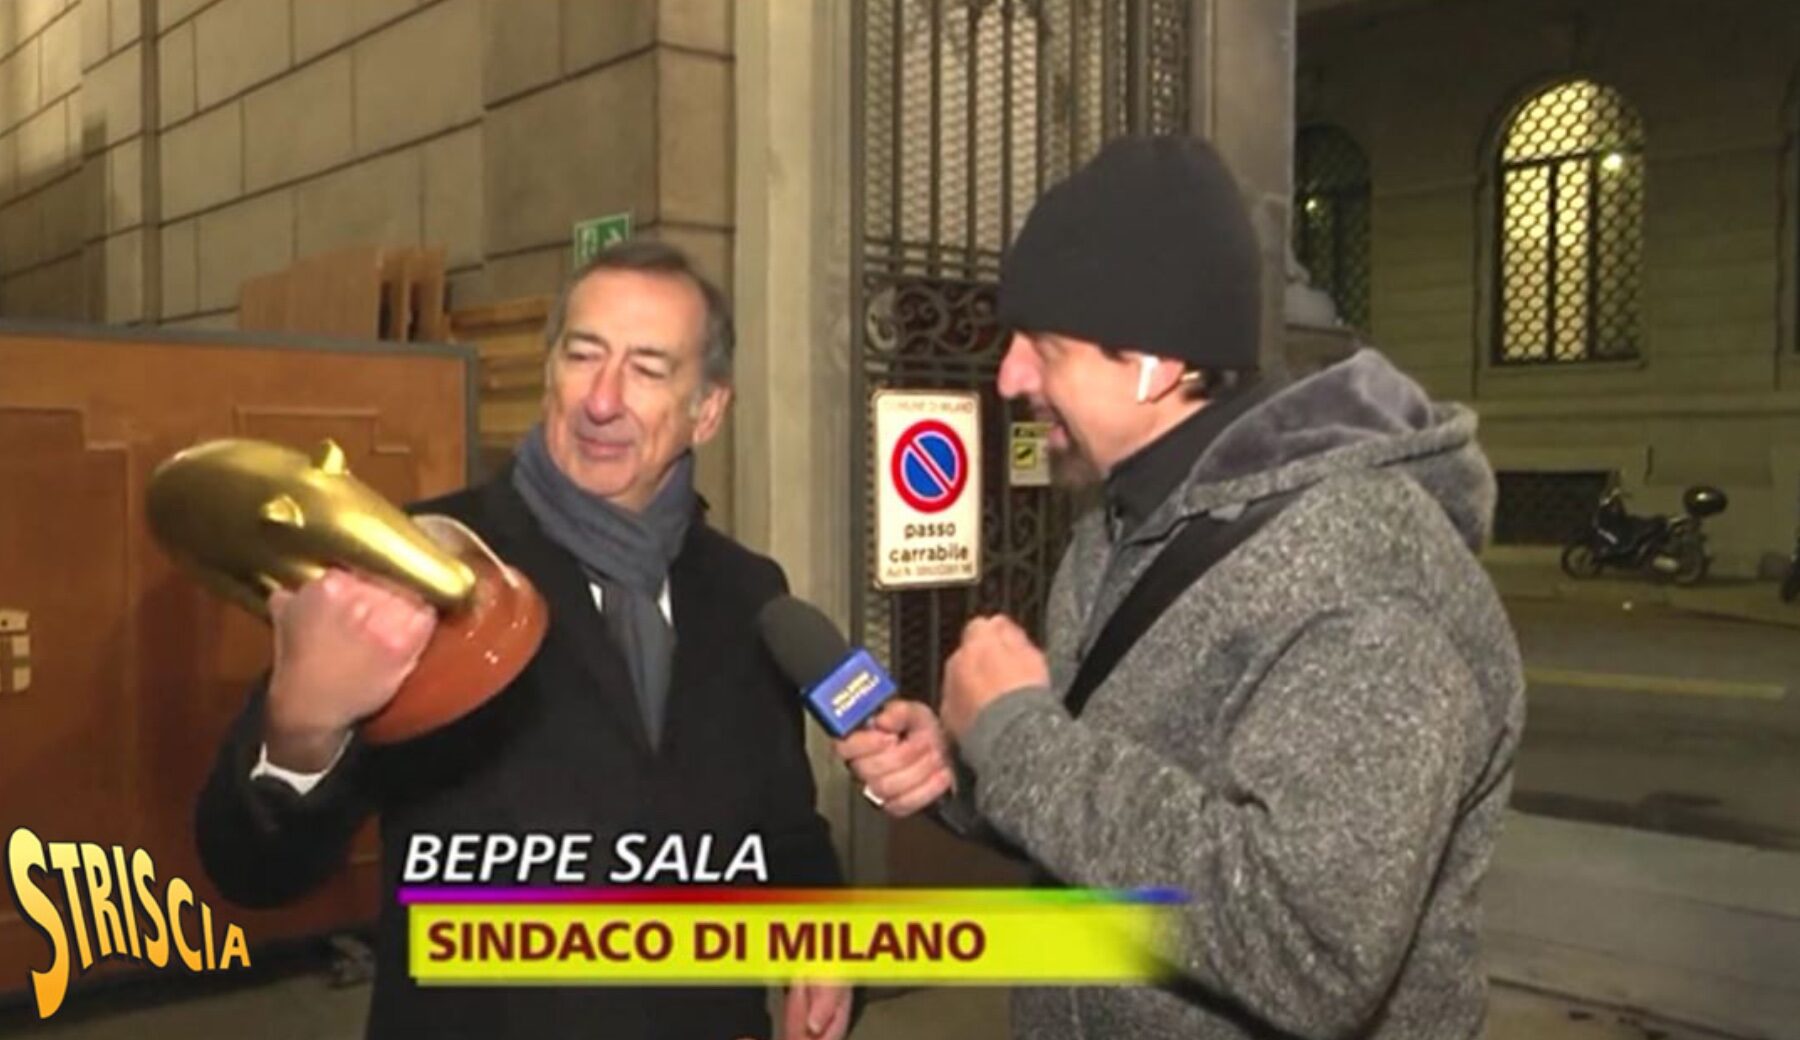 Tapiro d’oro al sindaco di Milano Beppe Sala: si batte per tenere i riscaldamenti bassi, ma a Palazzo Marino ci sono oltre 25 gradi